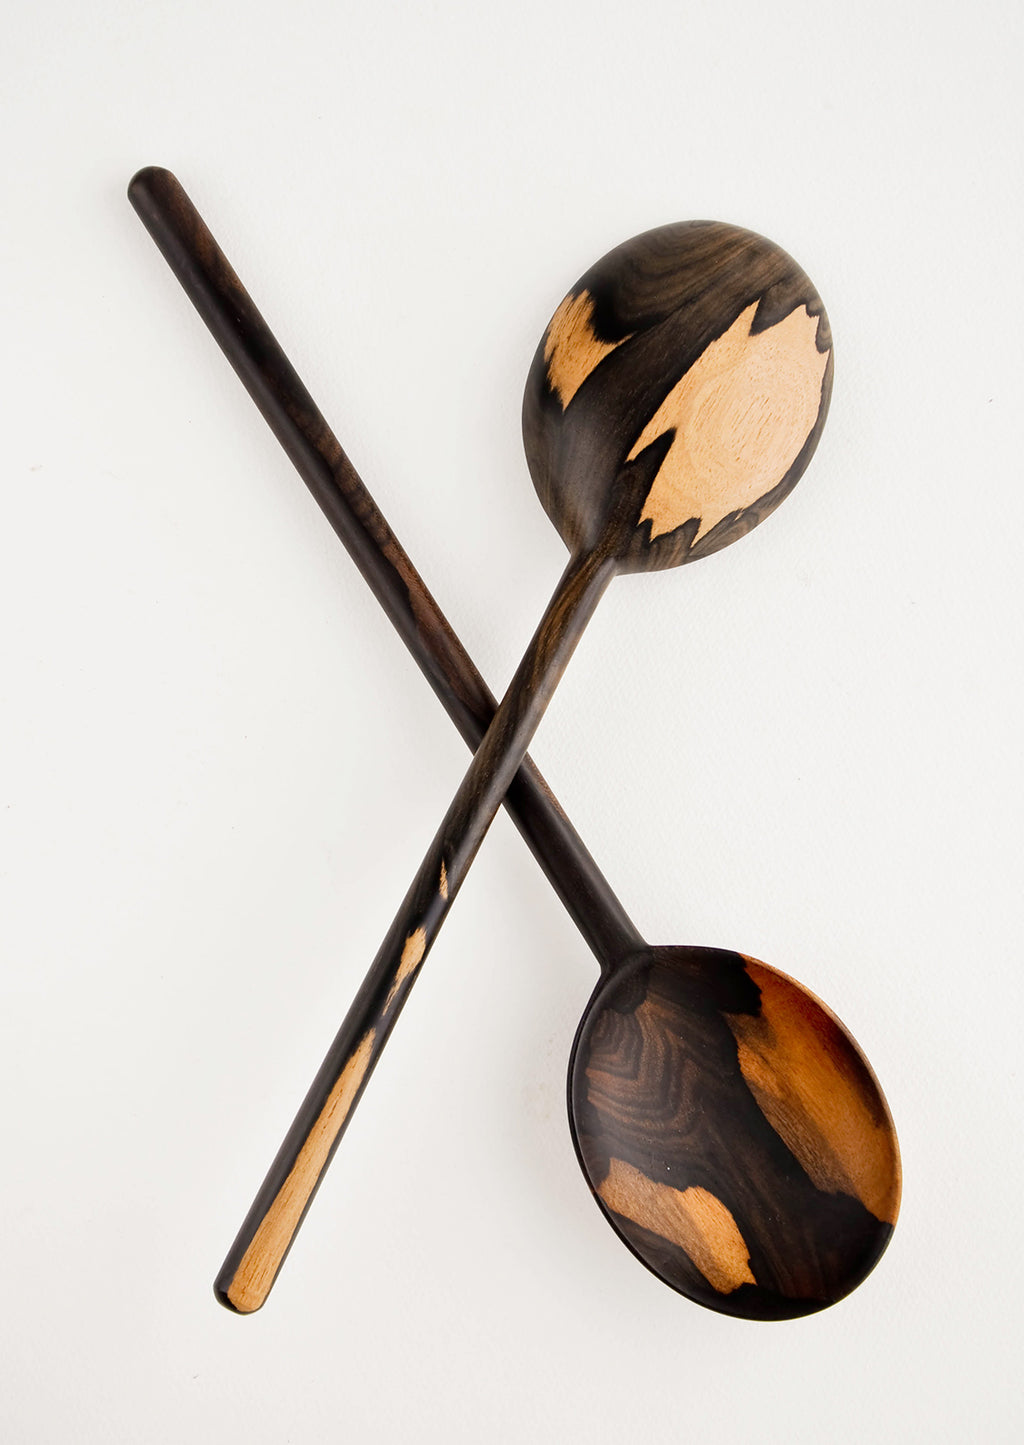 Large Oval / Dark: Peten Wooden Spoon in Large Oval / Dark - LEIF